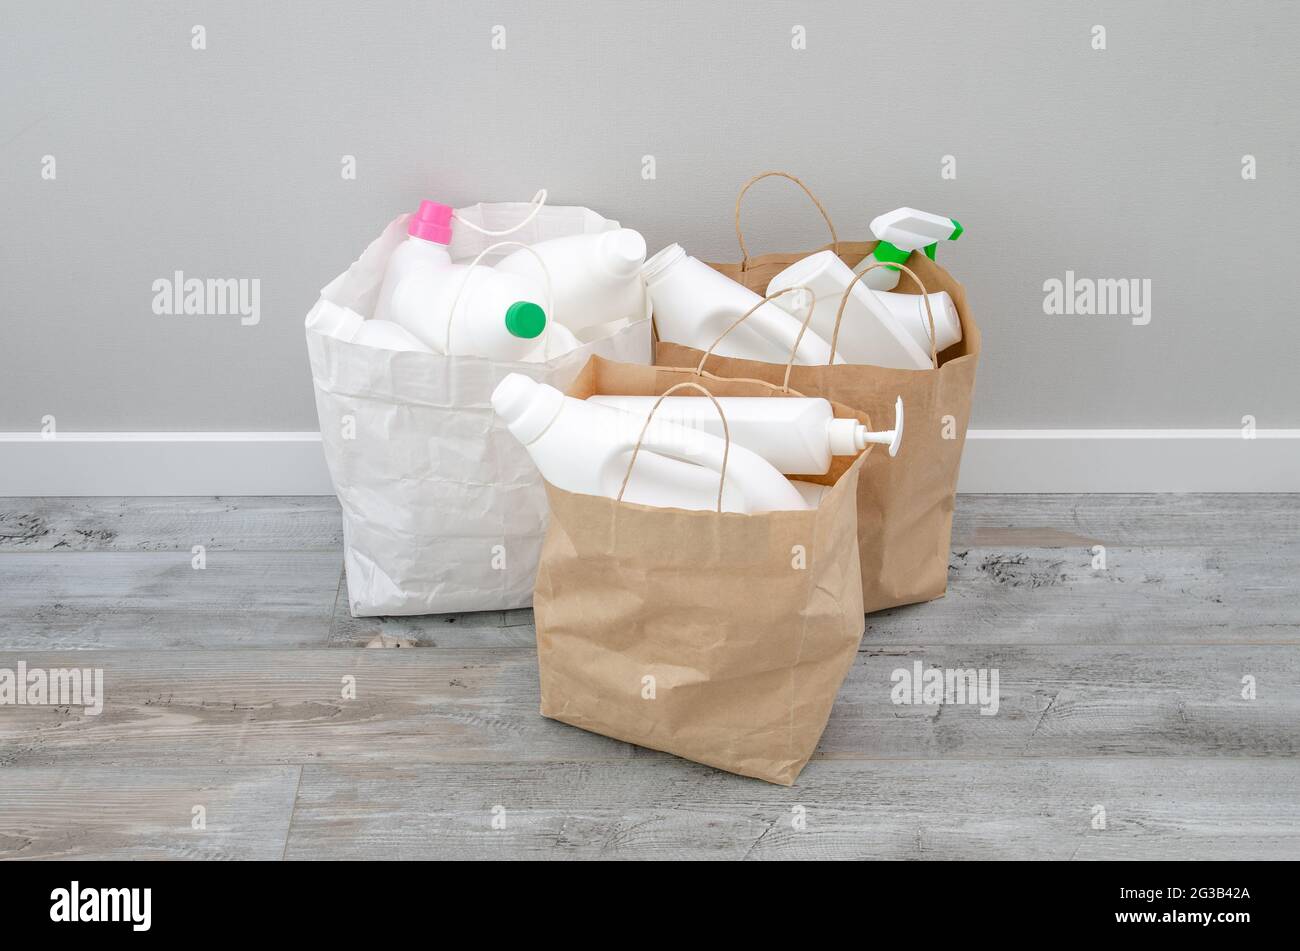 Productos químicos domésticos botellas de plástico en una bolsa de papel,  reciclaje y reuso concepto Fotografía de stock - Alamy